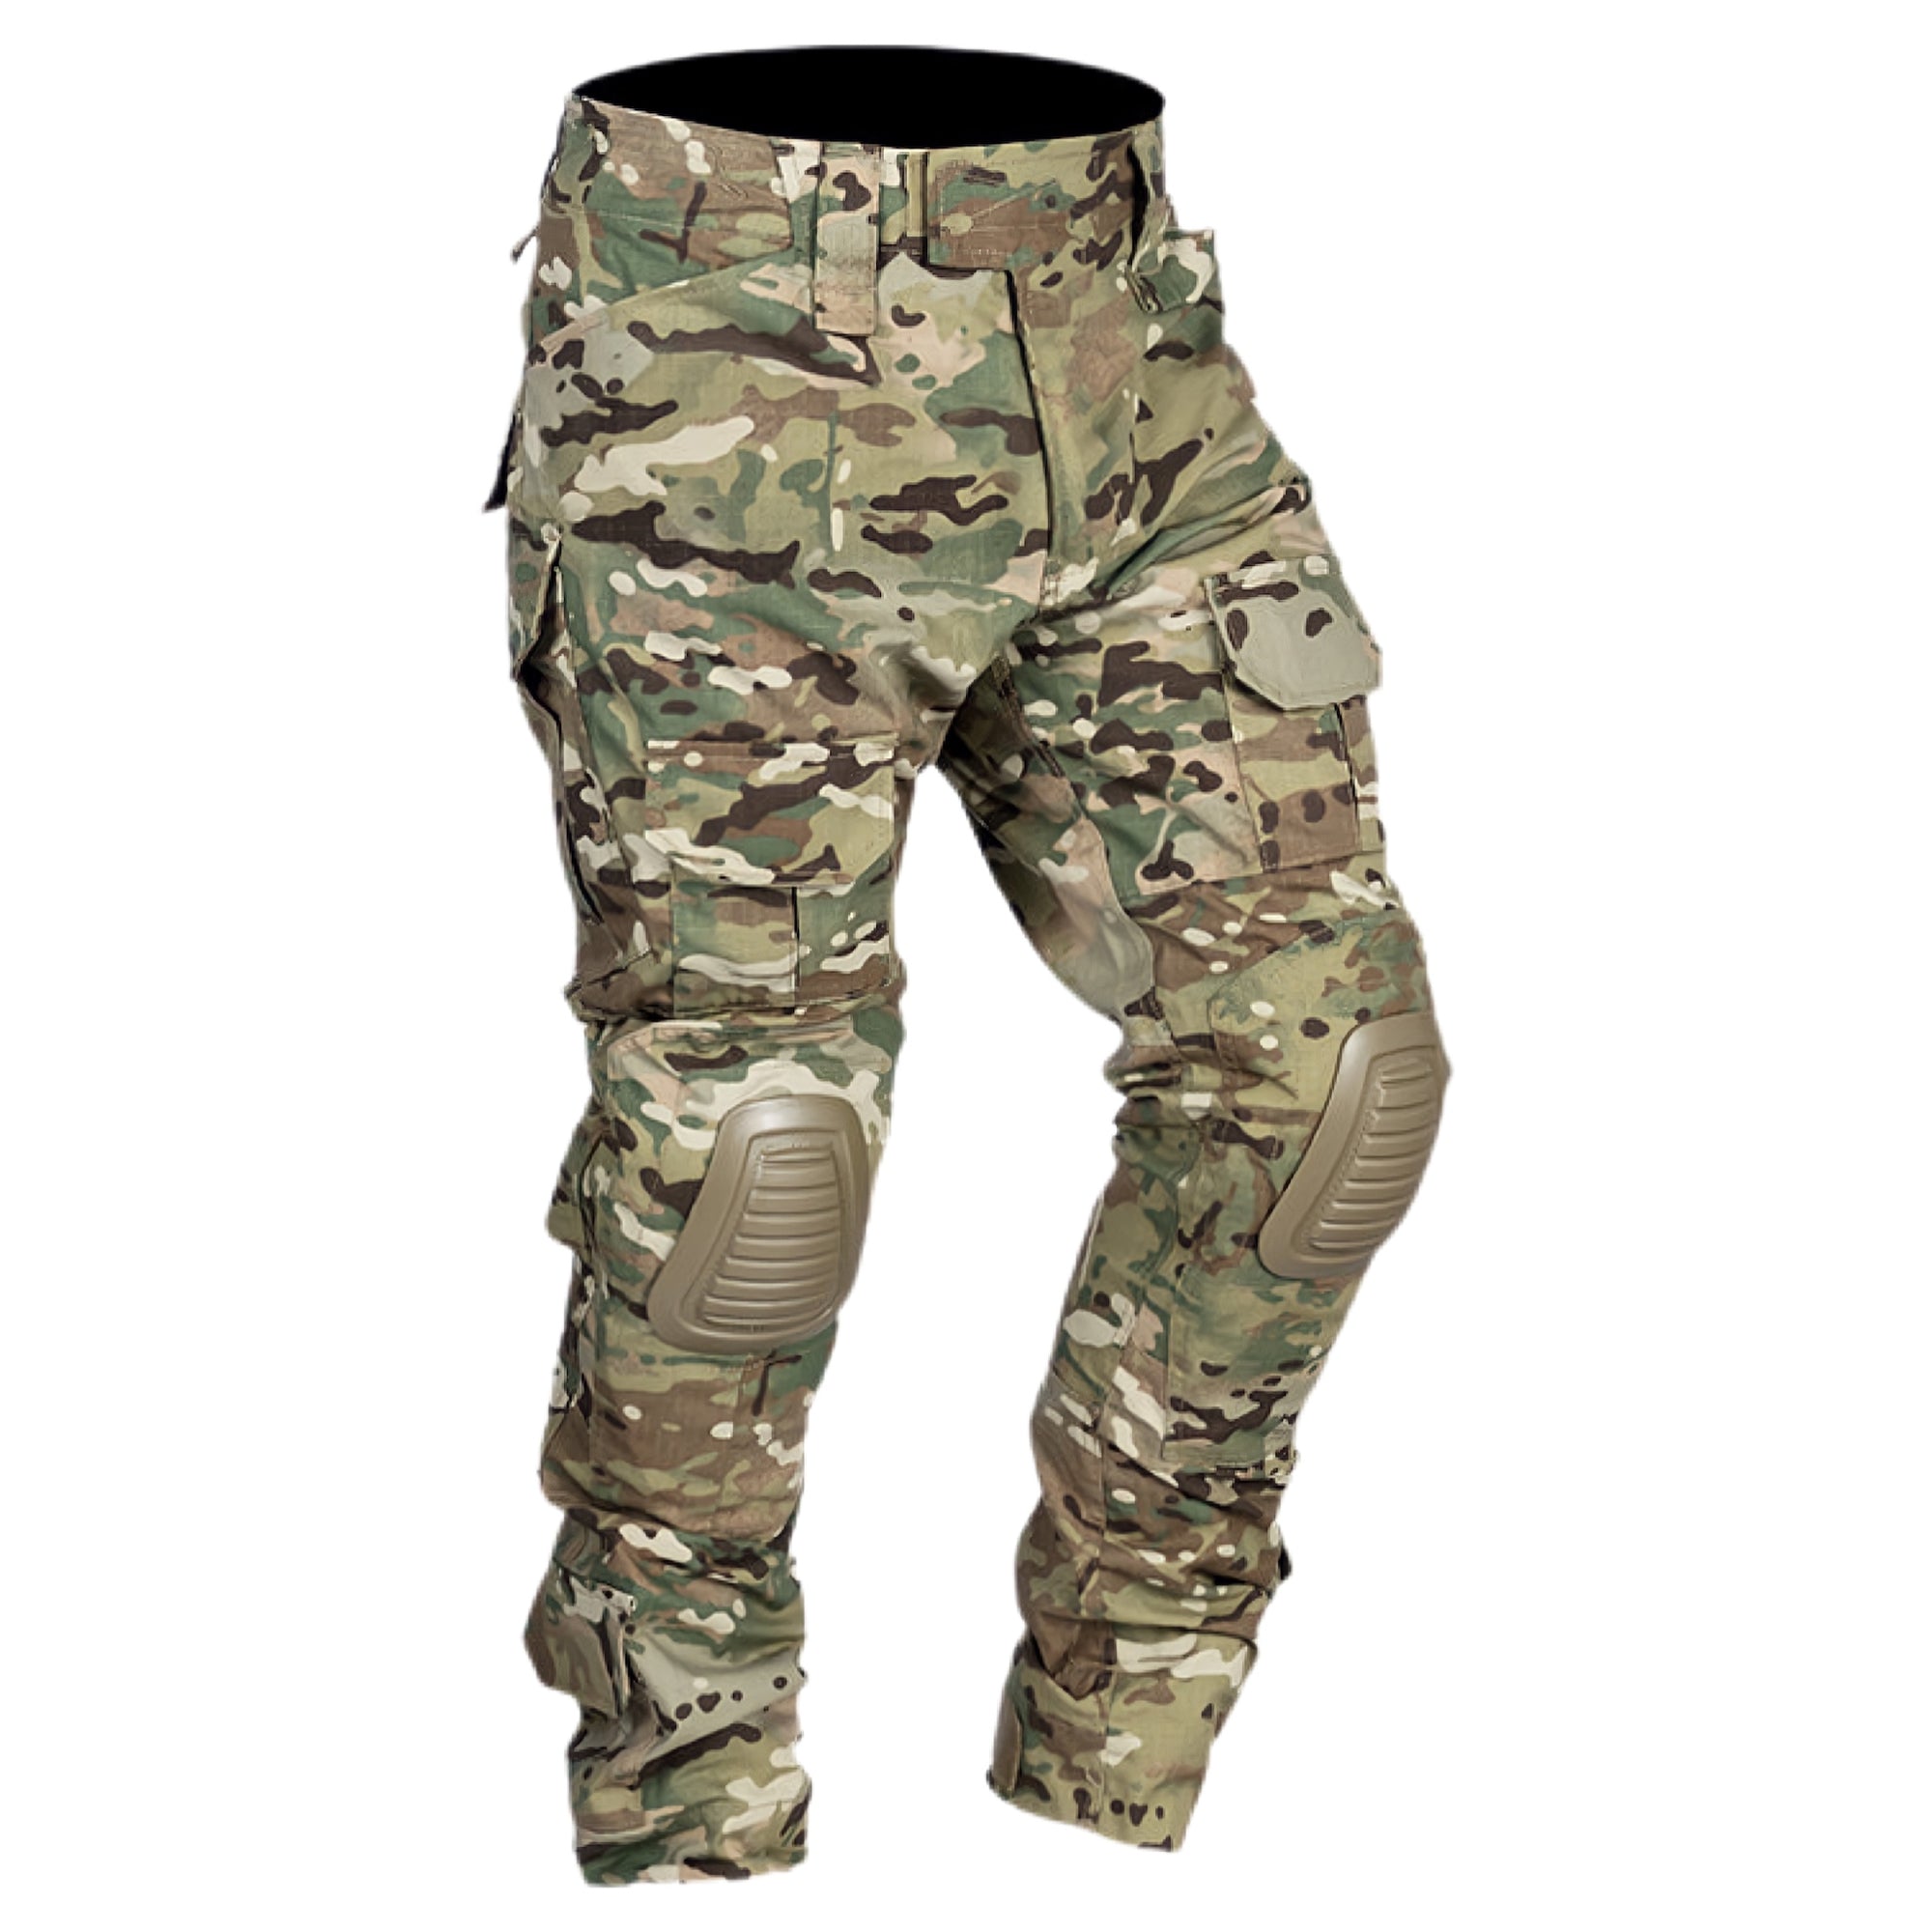 Outdoor & Tactics | High Quality Gear | Combat Pant AdvancedX